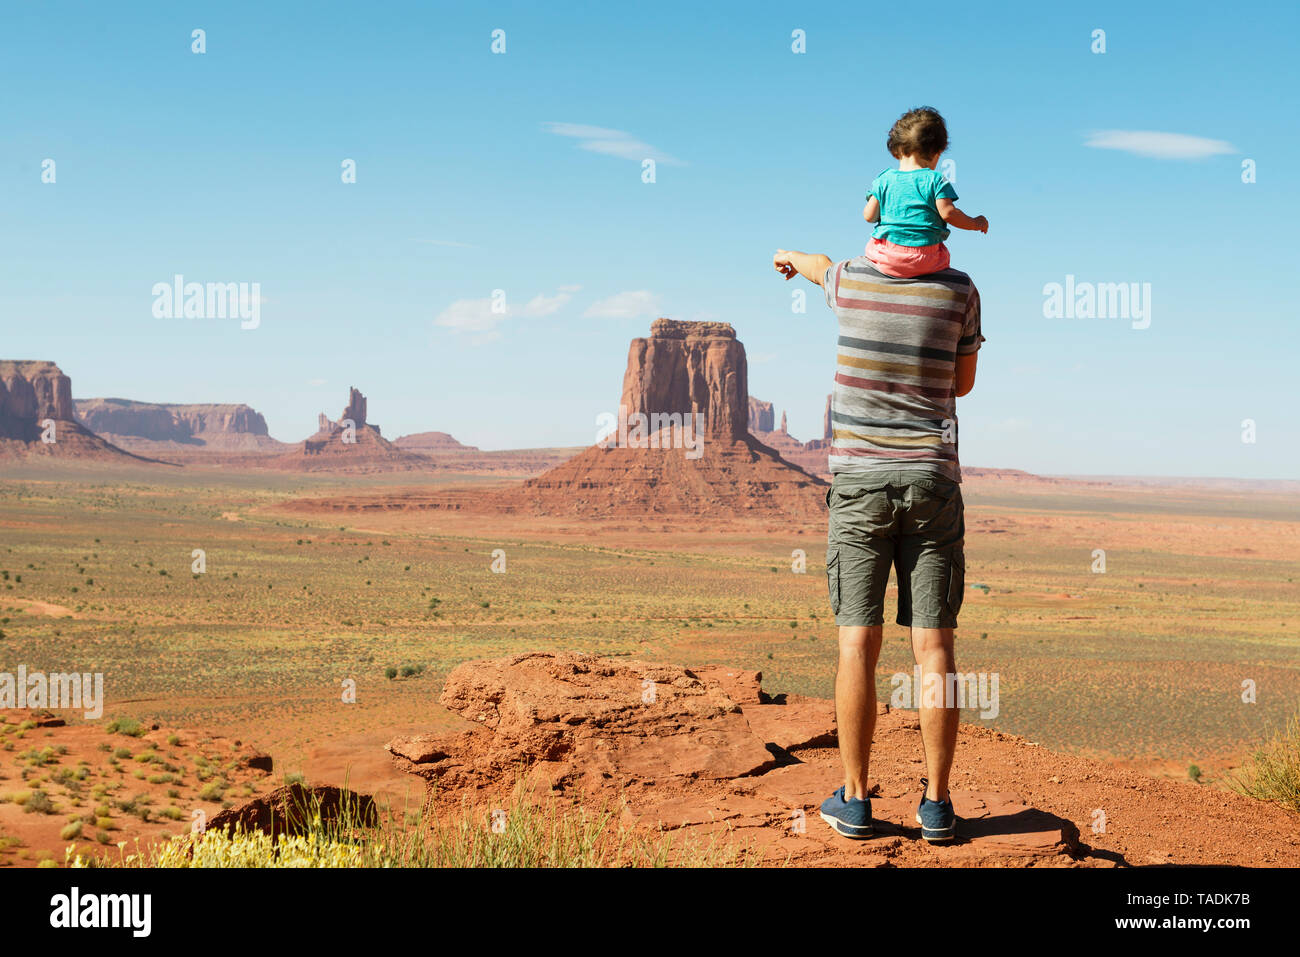 USA, Utah, Monument Valley, le père qui voyage avec bébé, fille sur les épaules et se dirigeant à Monument Valley landscape Banque D'Images